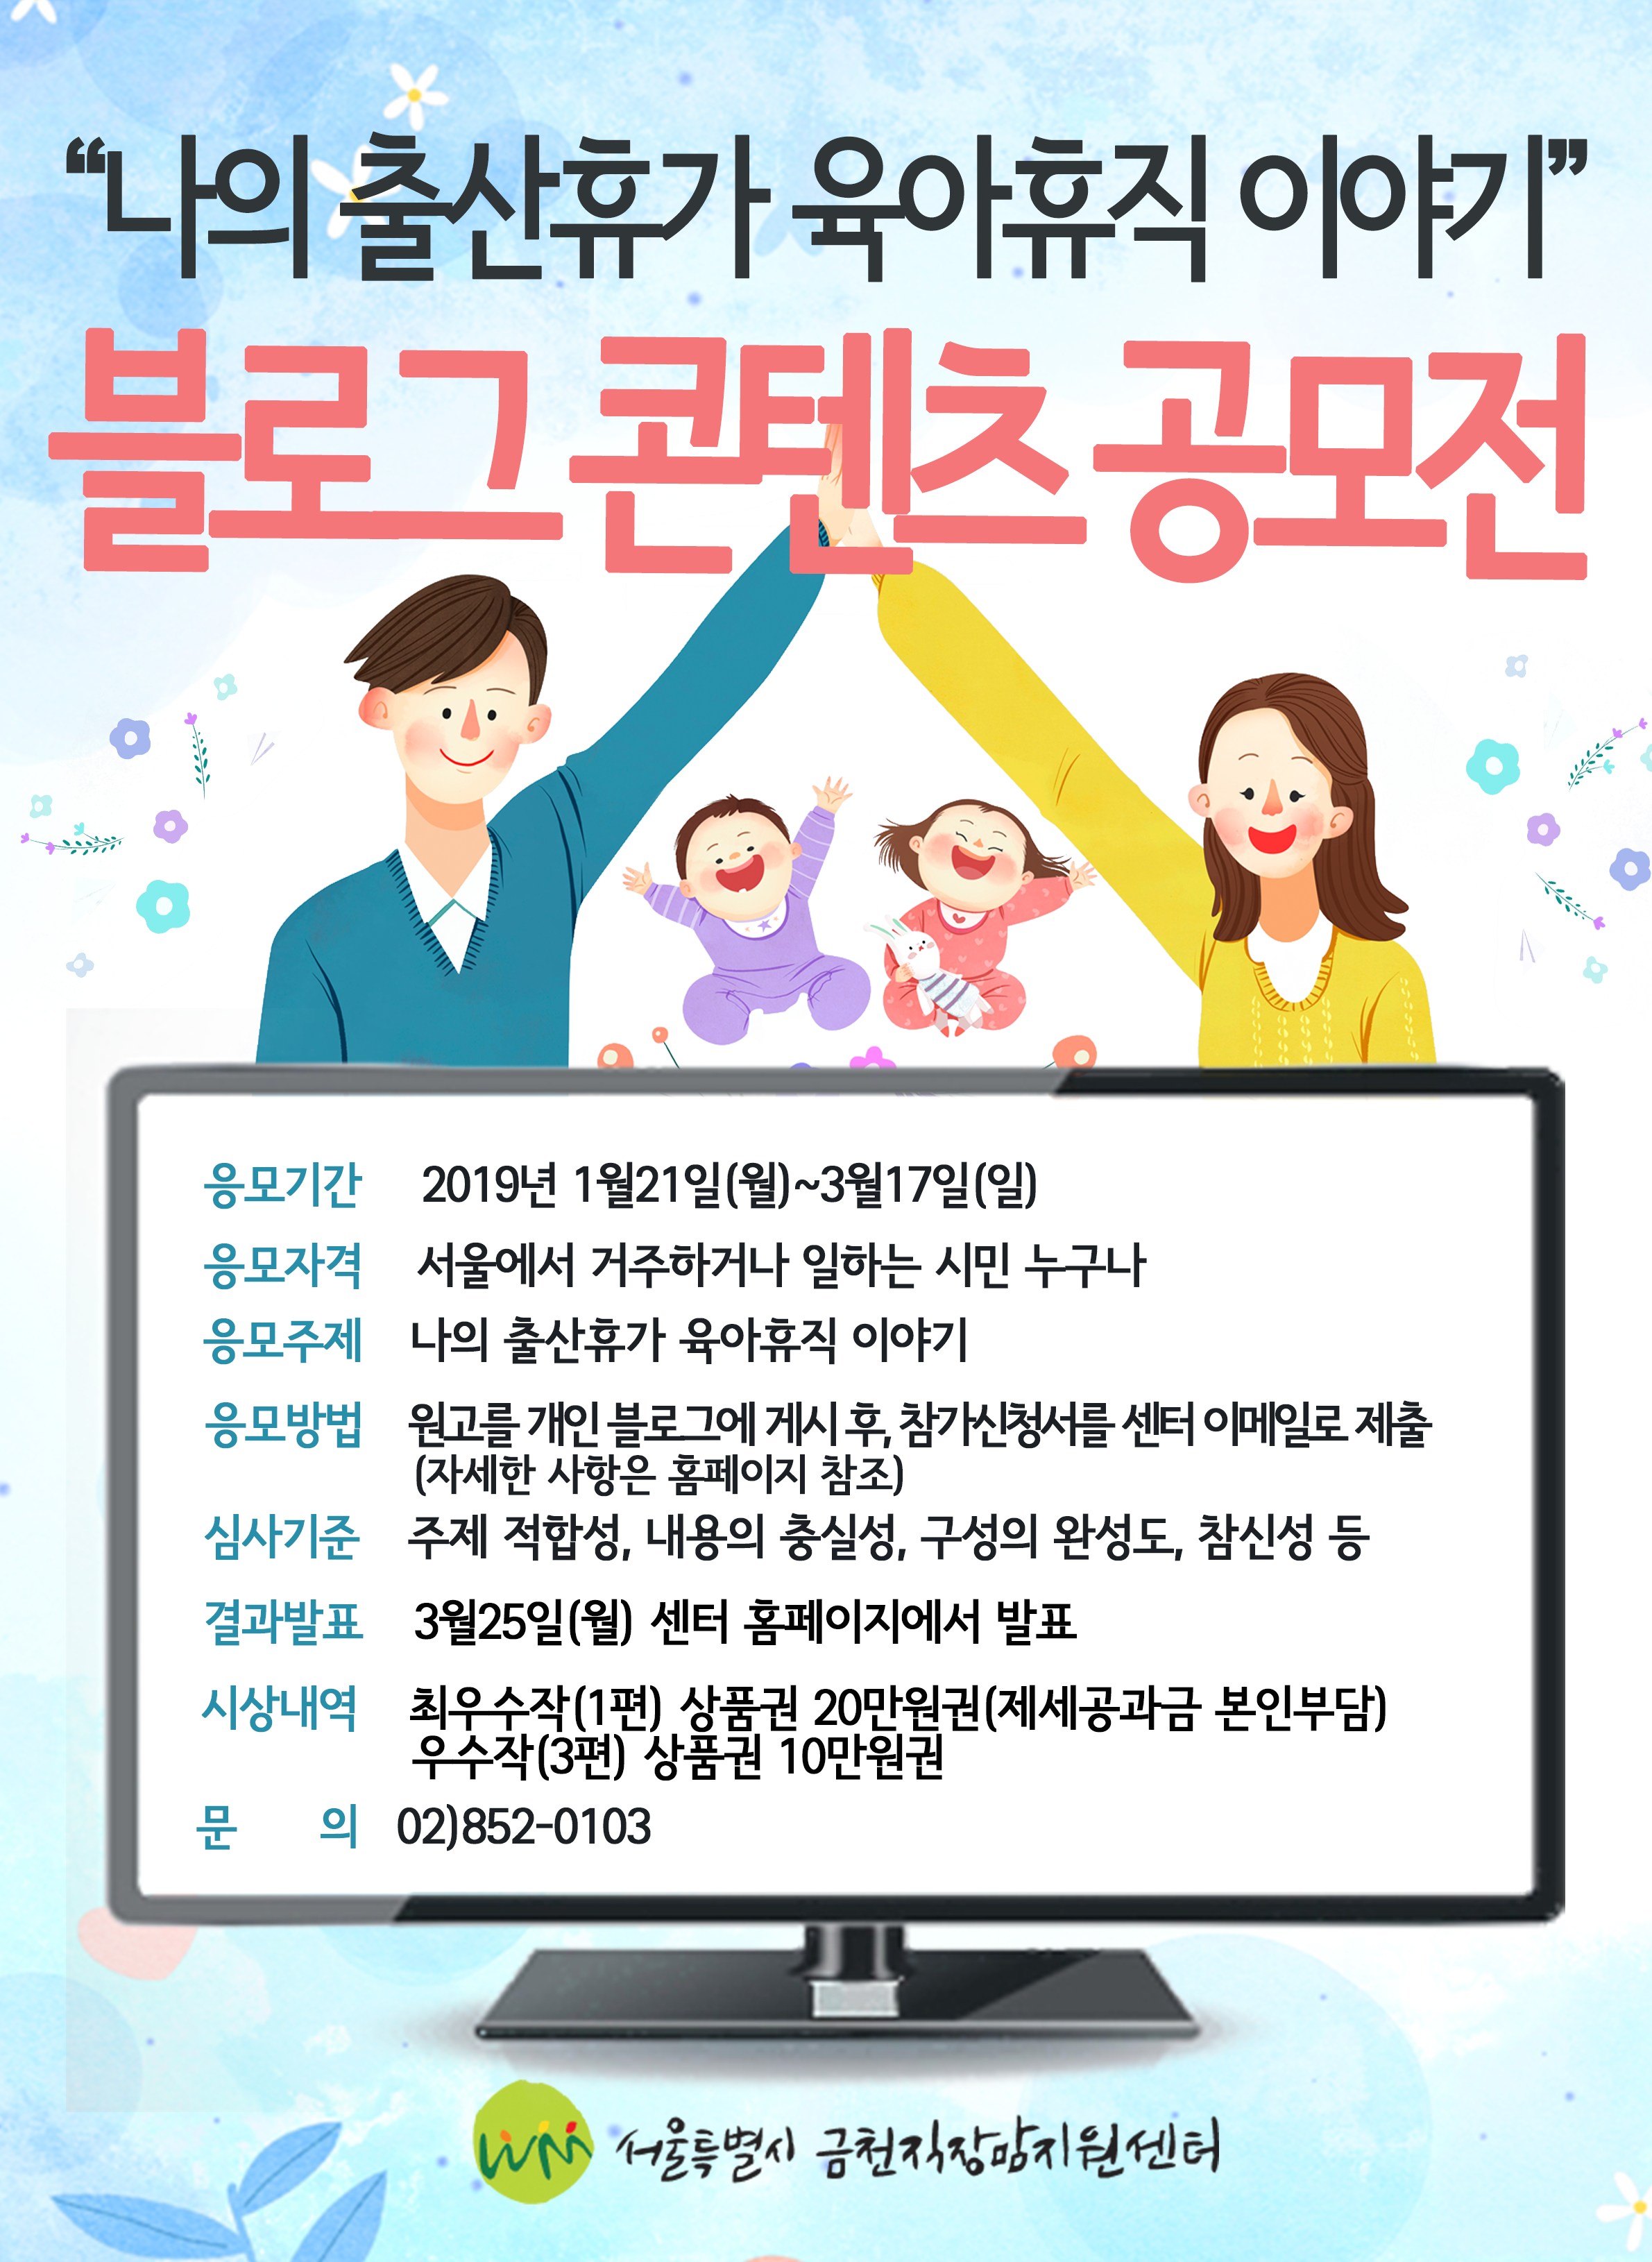 나의...이야기 블로그 콘텐츠 공모전 개최 